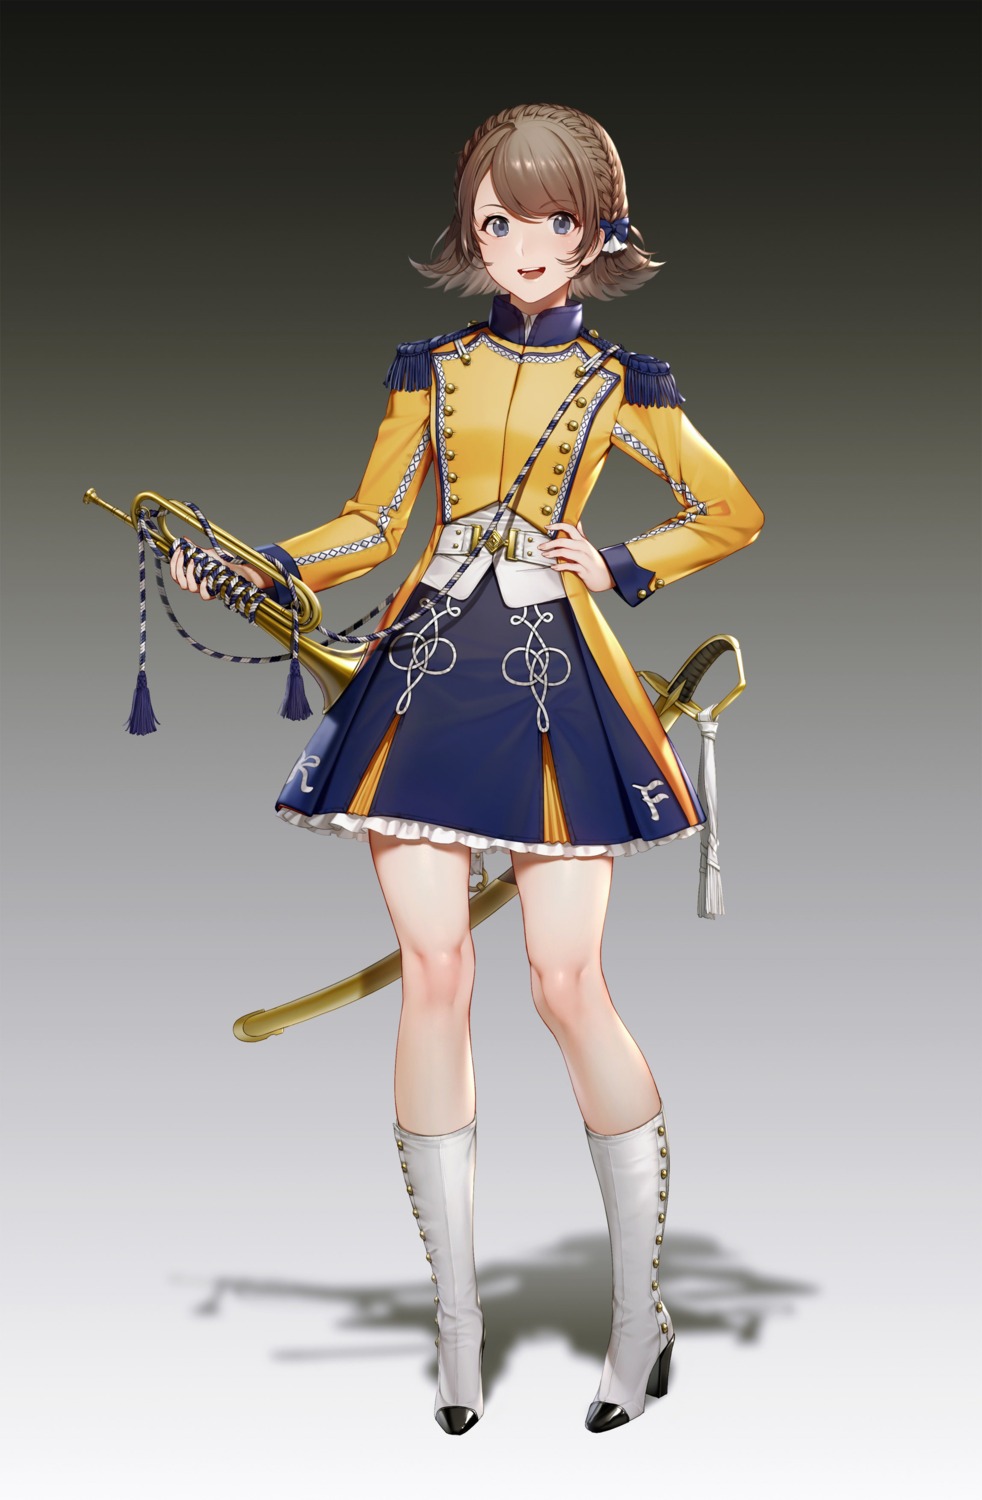 heels quuni sword uniform